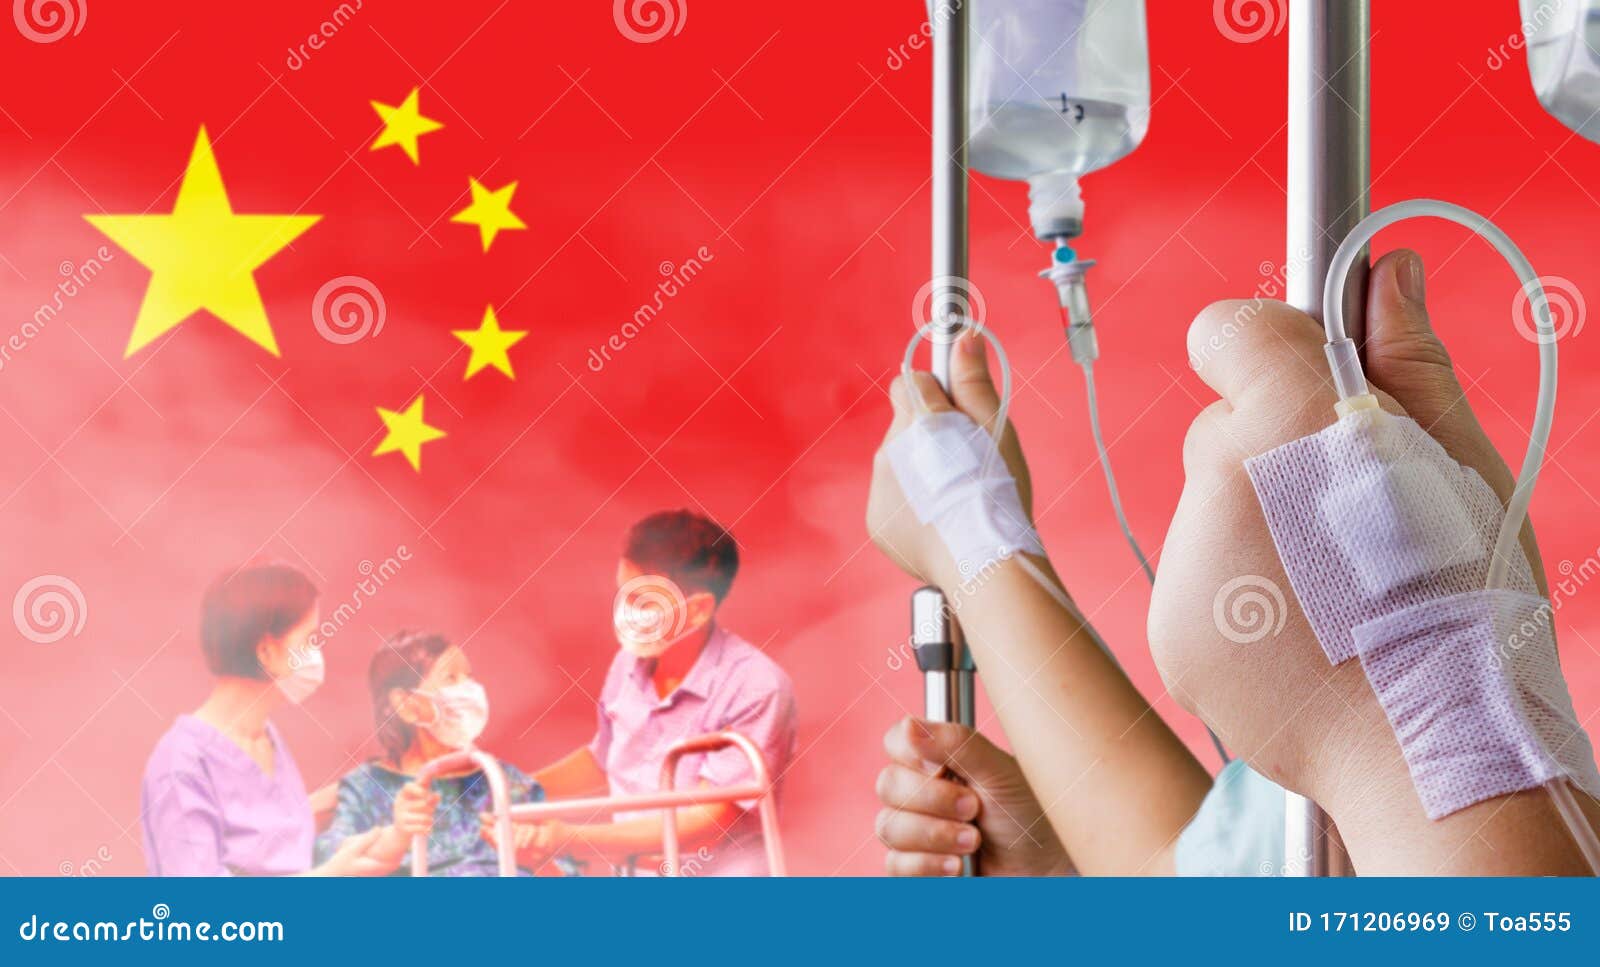 china battles coronavirus outbreak